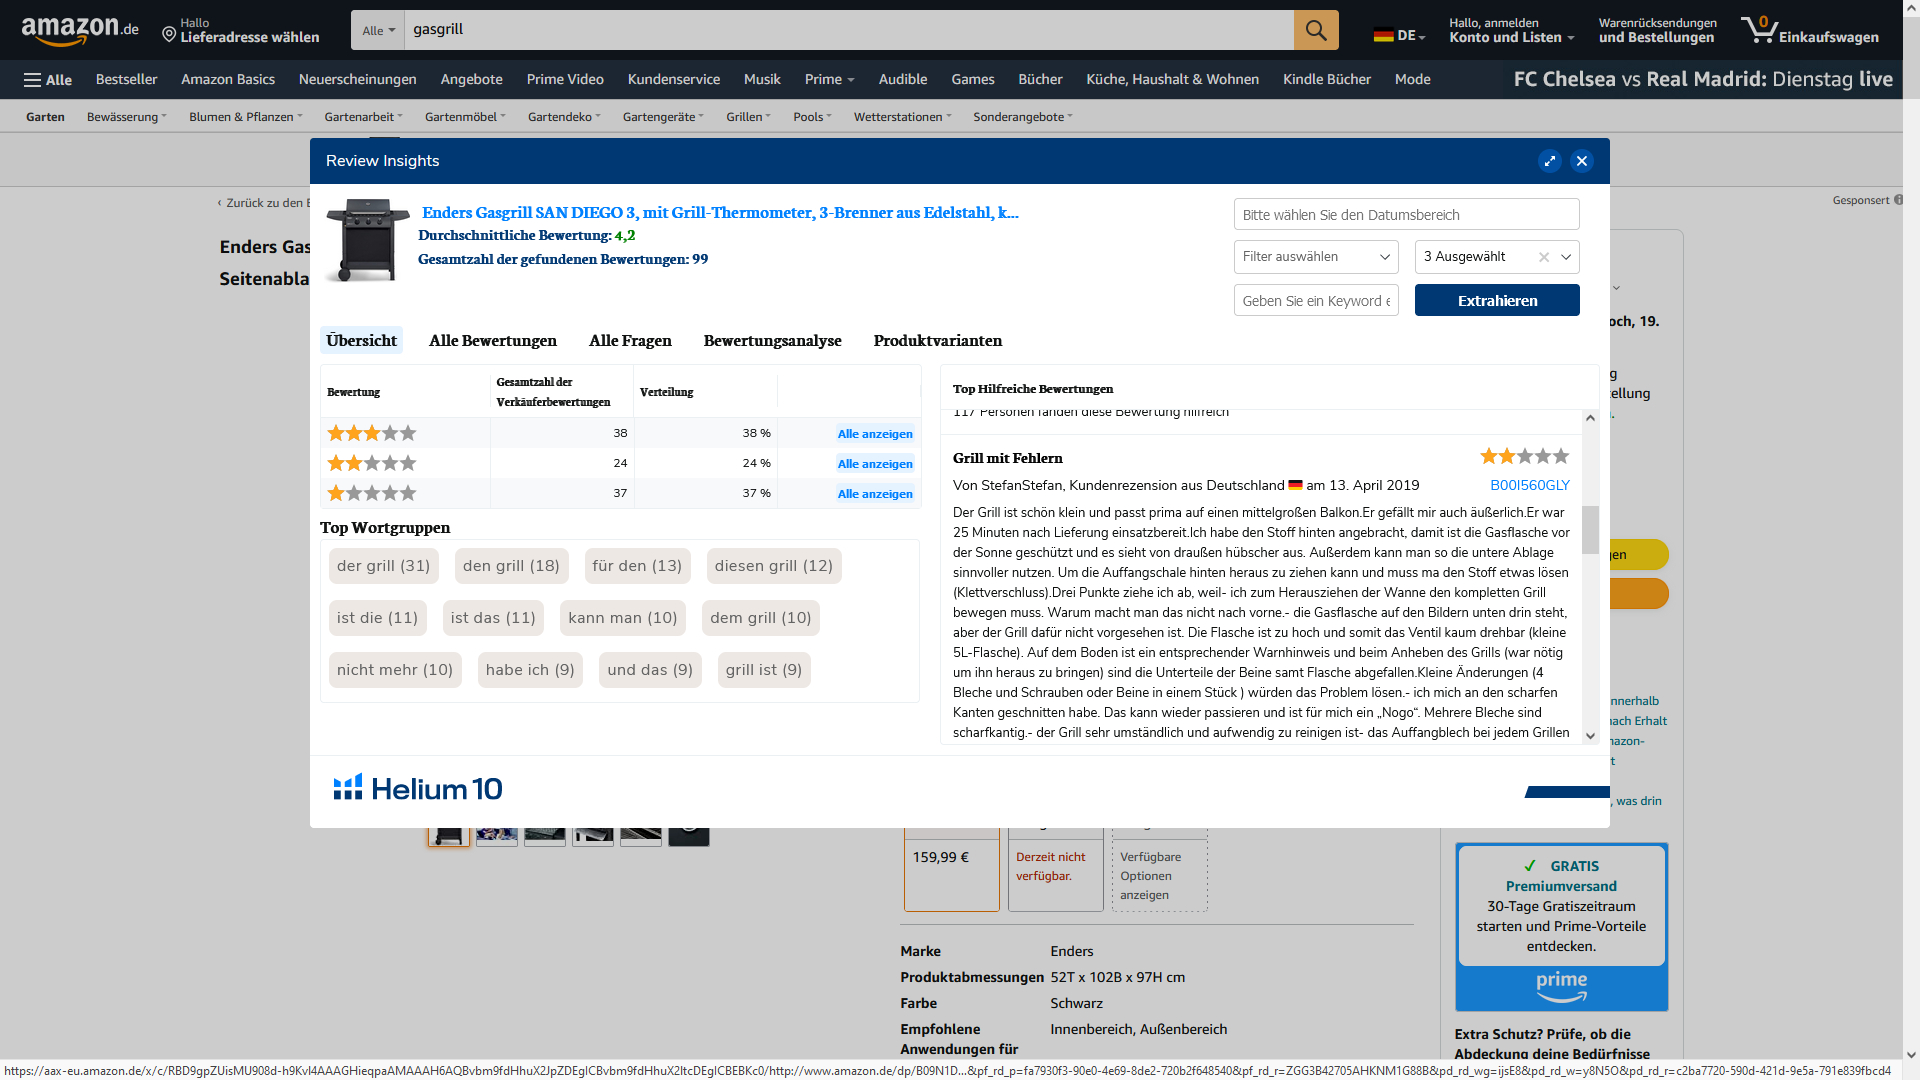 Der Screenshot zeigt das Tool "Reviews Insights" aus der Helium 10 Browser extension, mit dem man Reviews auswerten und herunterladen kann.